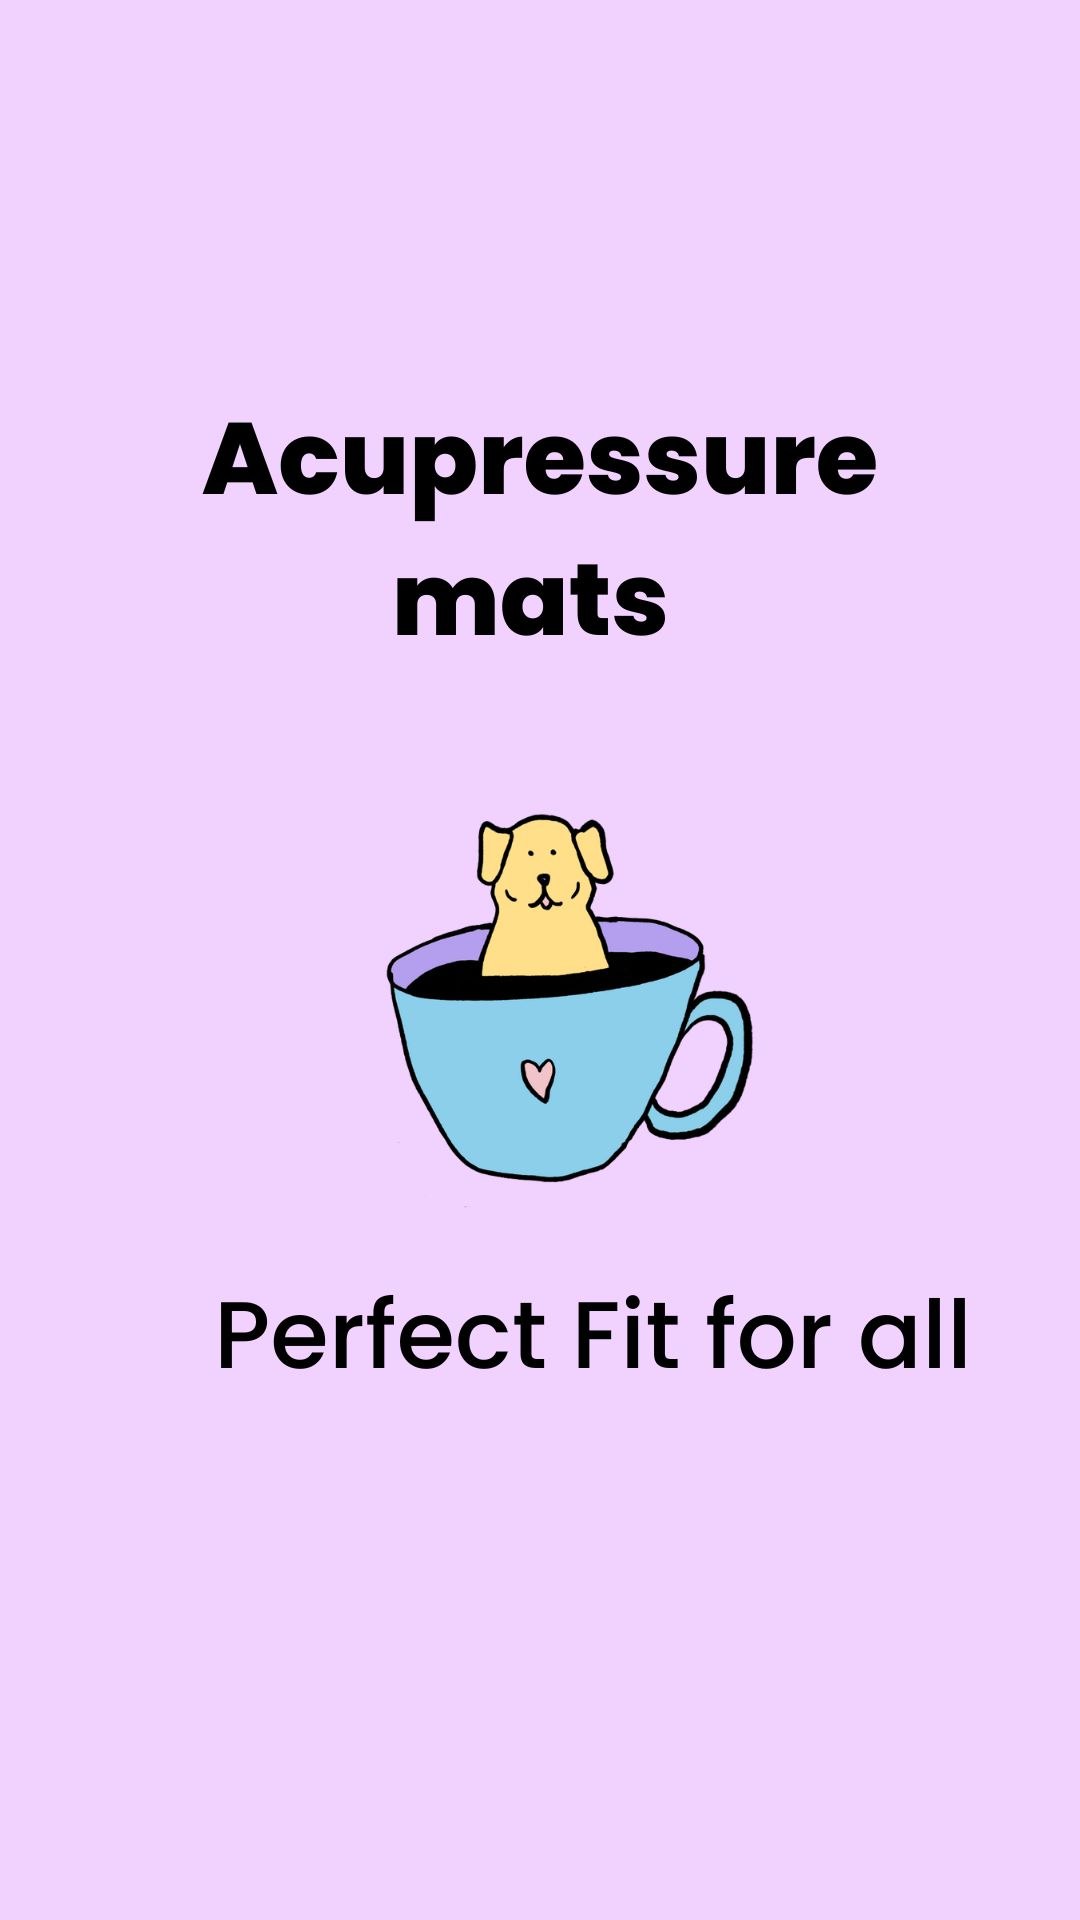 acupressure mats uses